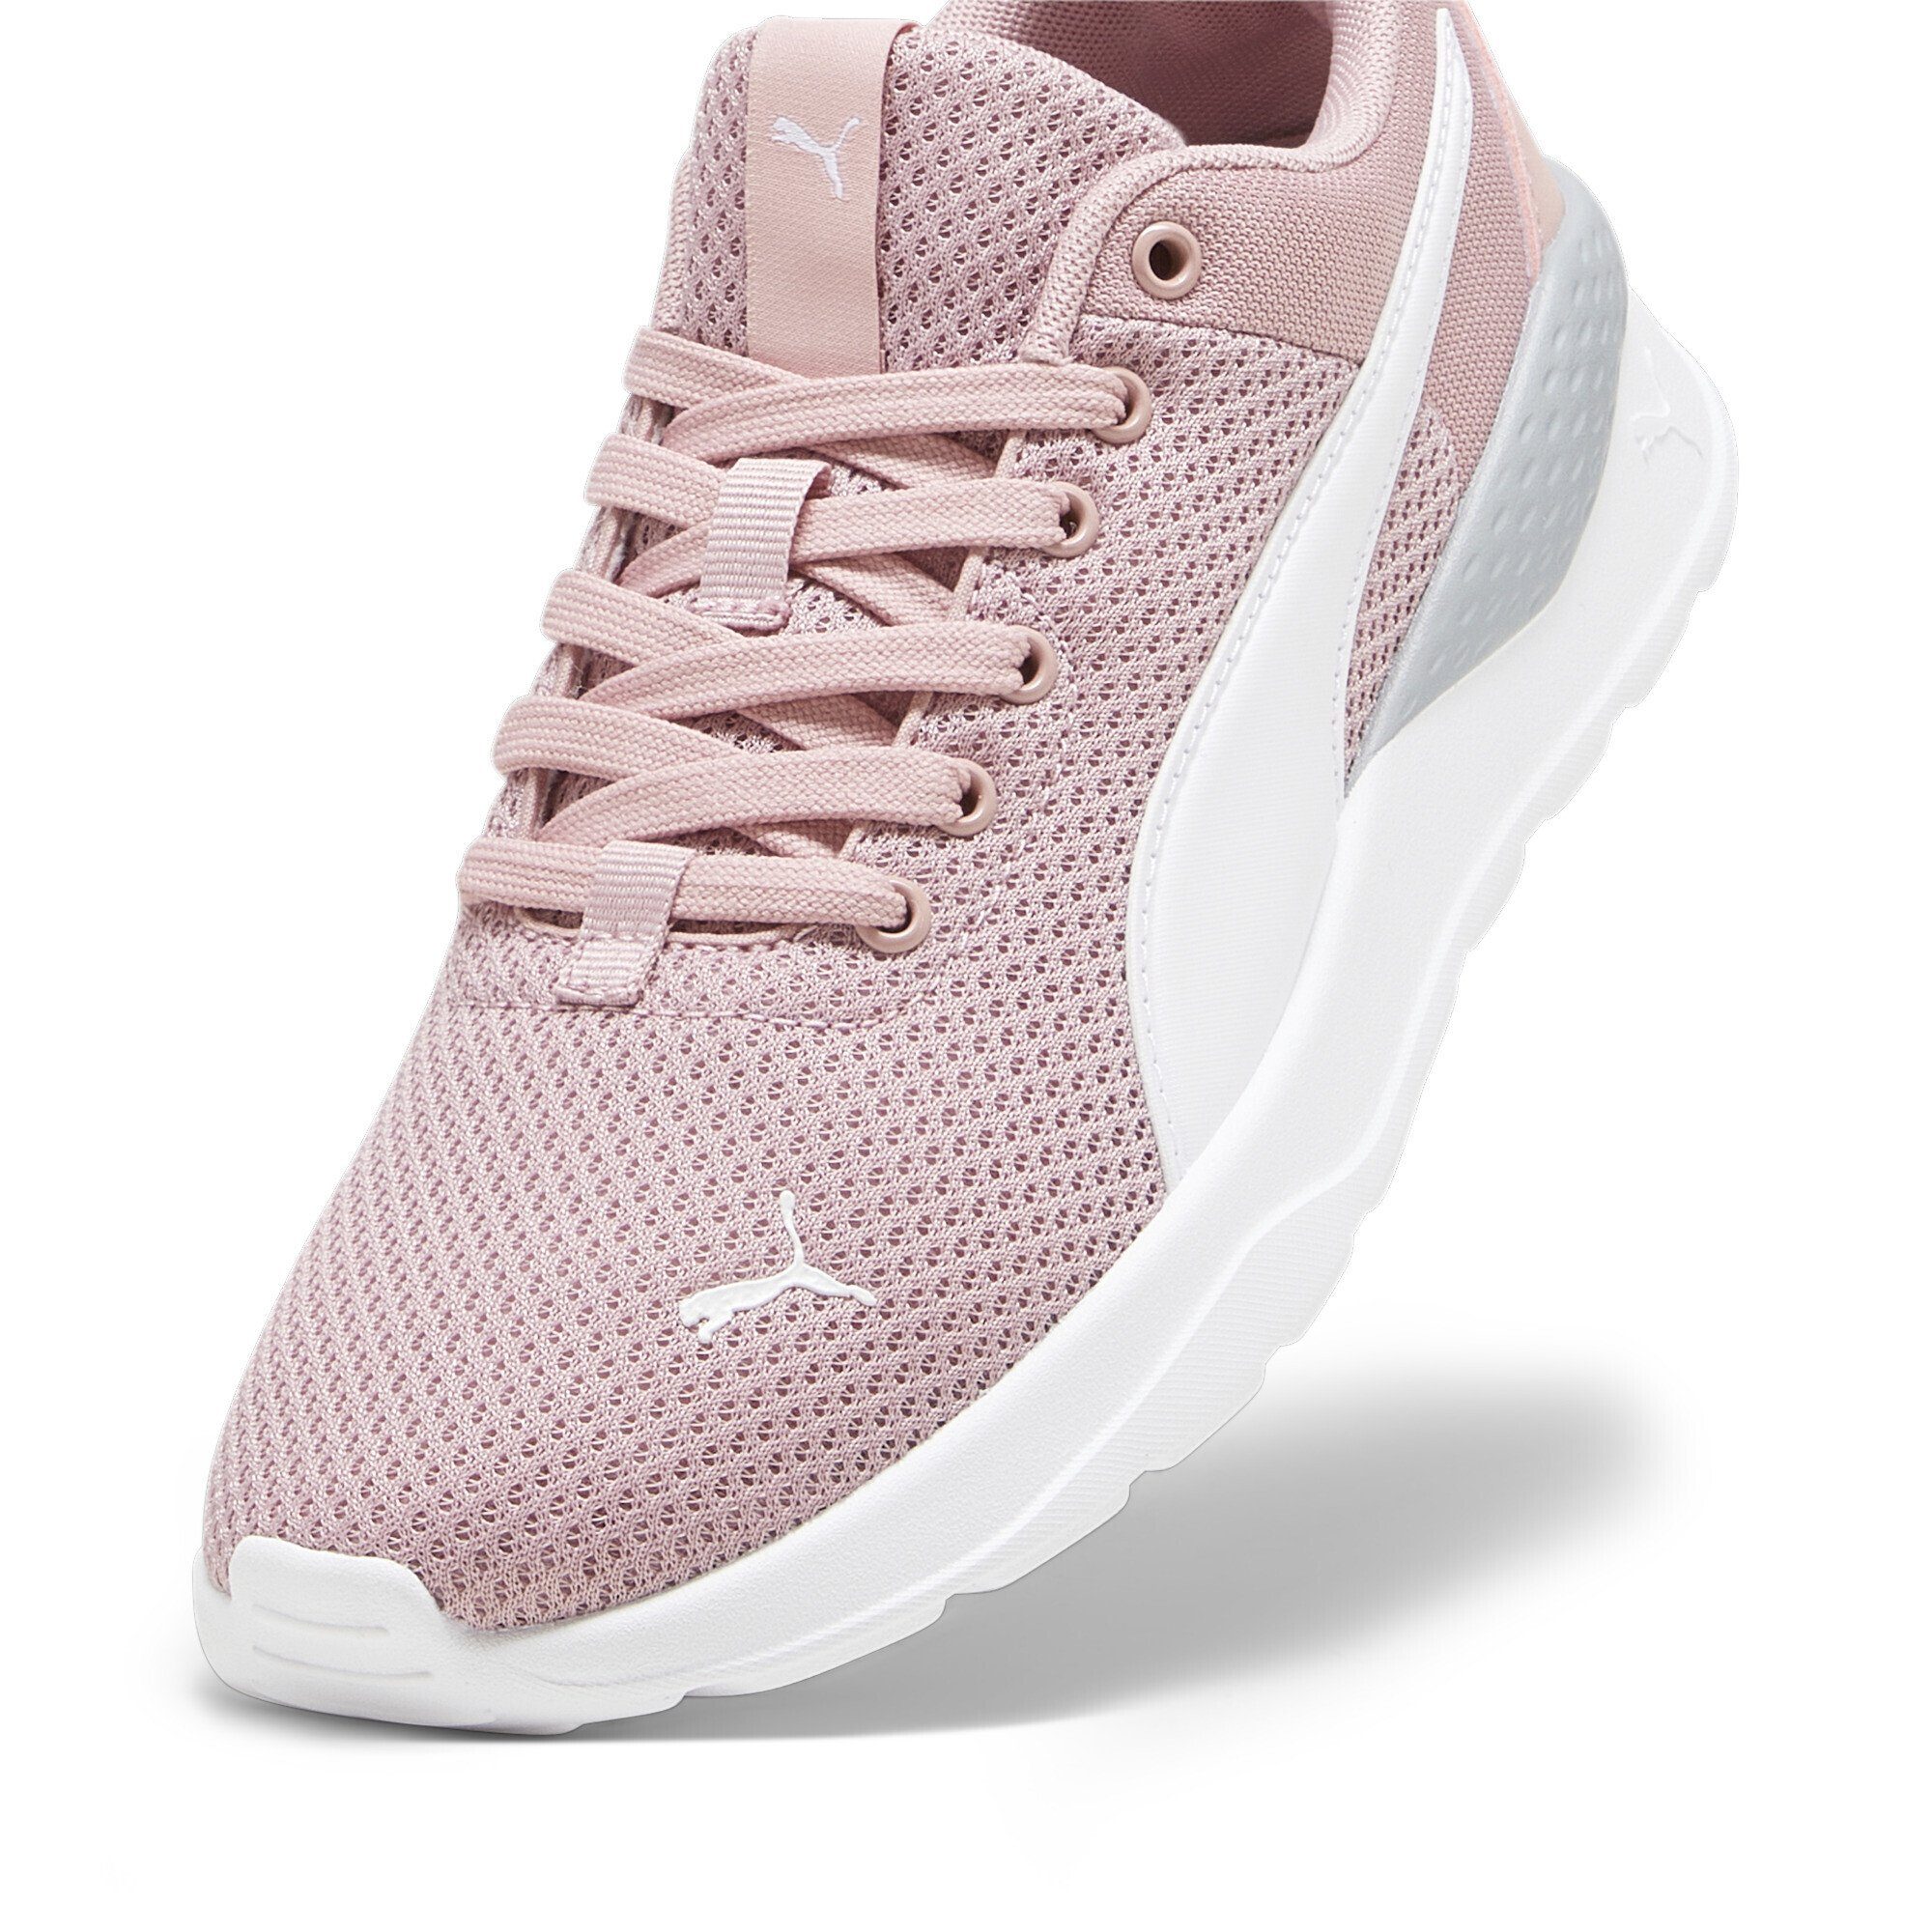 Peach Jugendliche Anzarun Smoothie PUMA Lite White Pink Sneakers Laufschuh